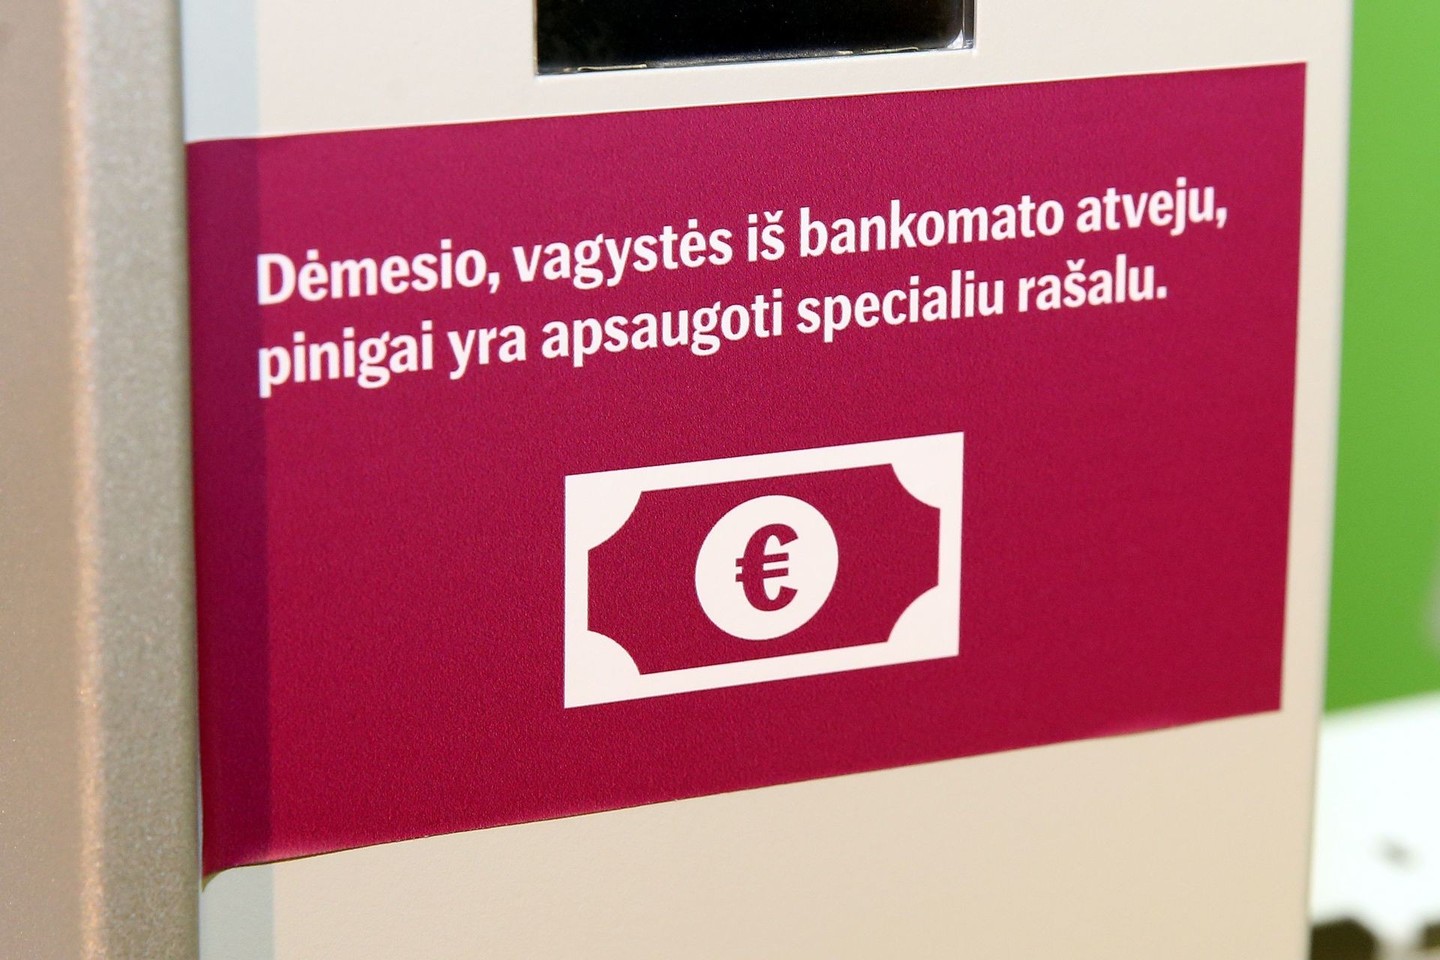 Prieš naudojantis bankomatu, reikia apžiūrėti, ar nėra įsilaužimo į bankomatą žymių.<br>R.Danisevičiaus nuotr.